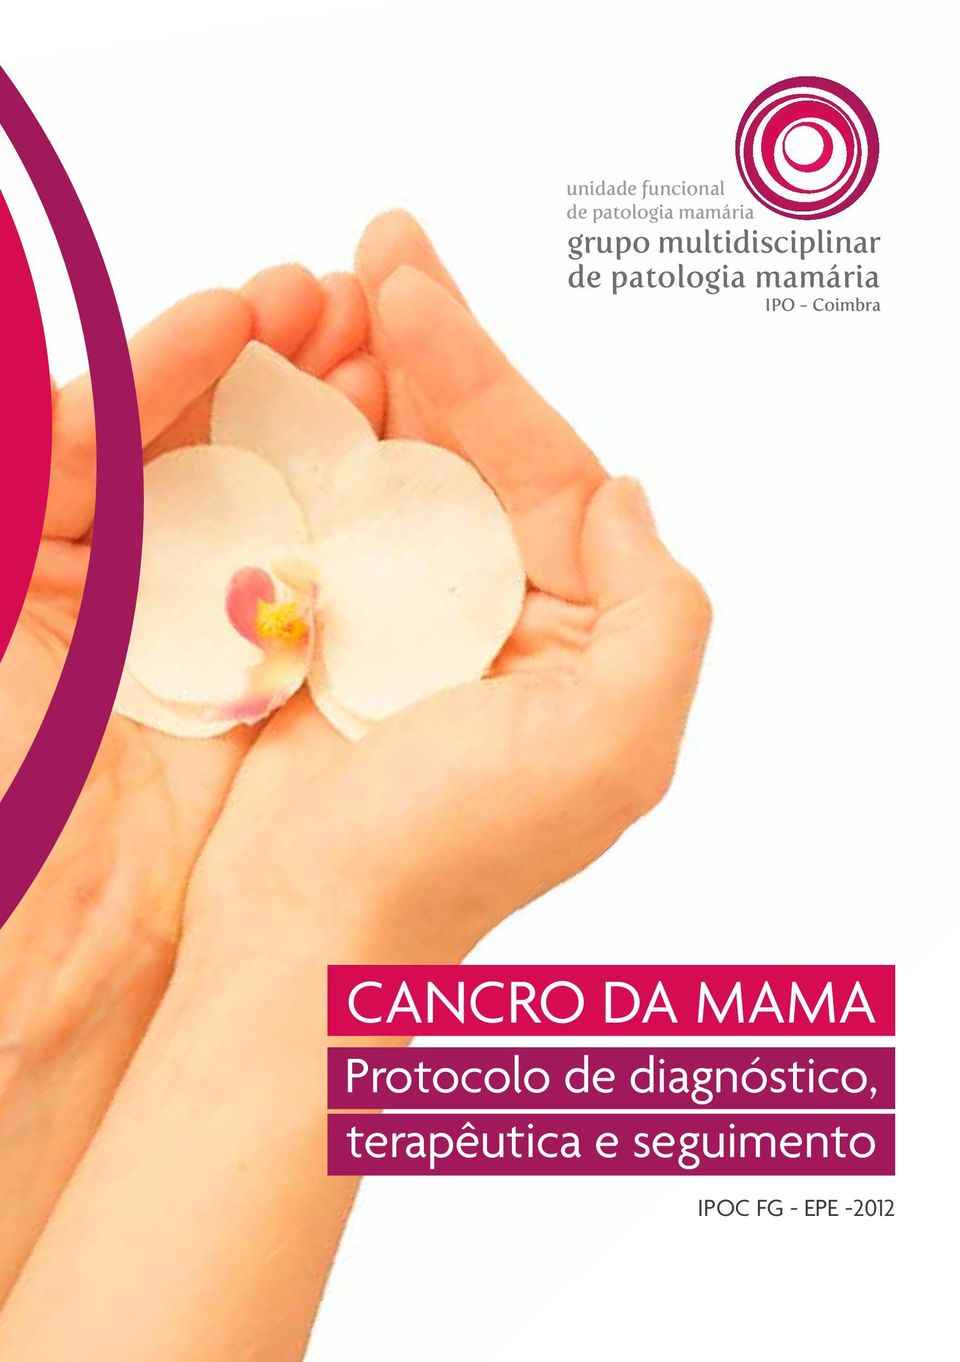 Coimbra CANCRO DA MAMA Protocolo de